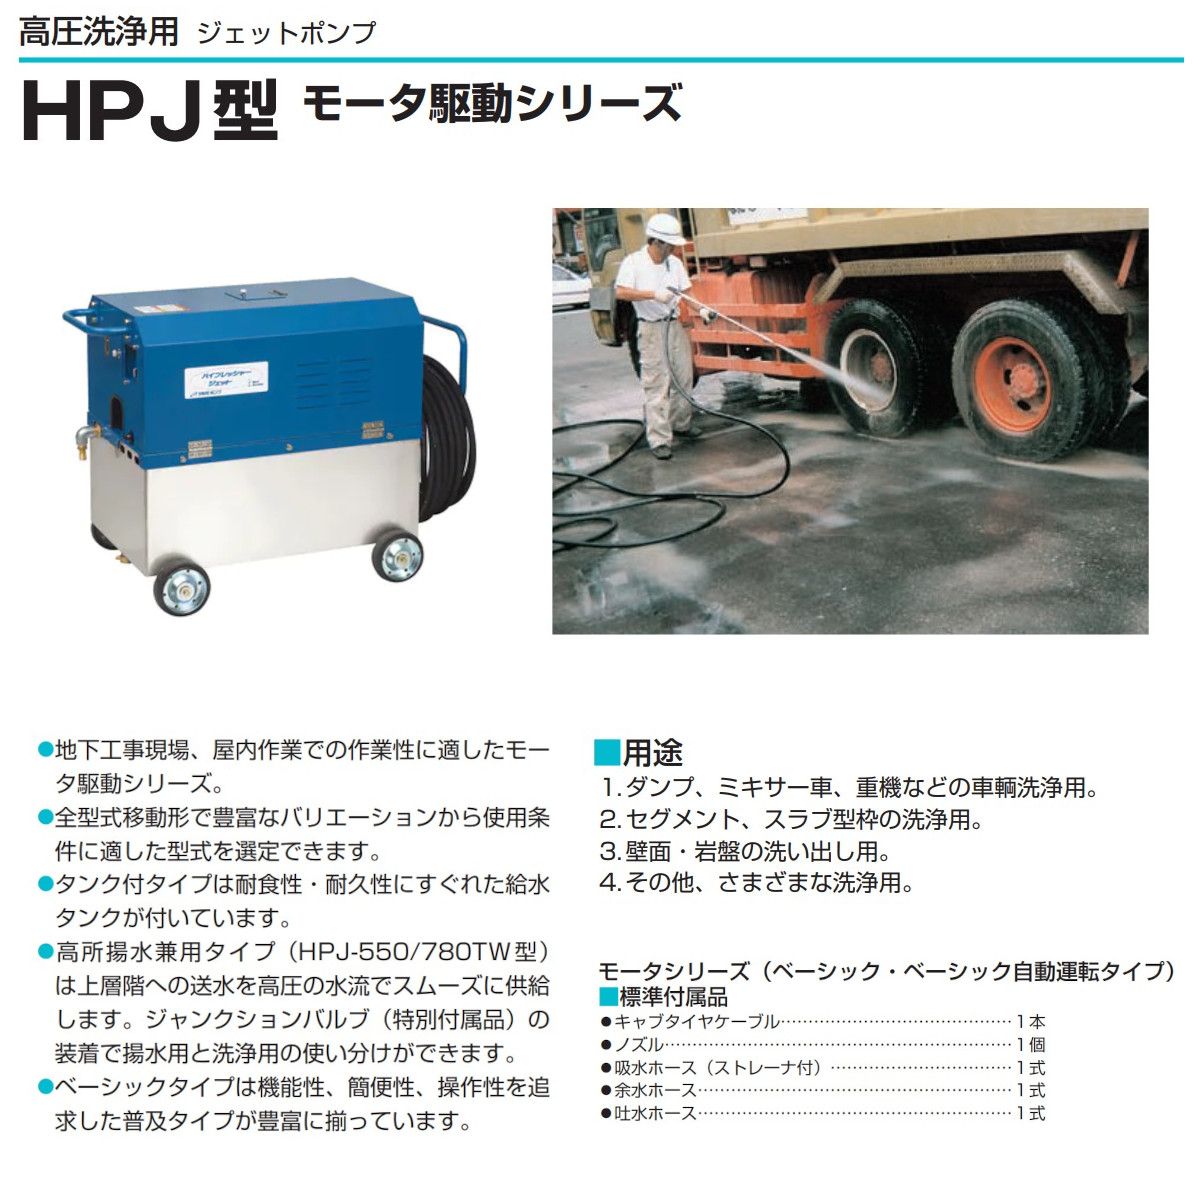 ツルミ 高圧洗浄機 HPJ-5150W 三相200V 高所揚水タイプ タンク付 